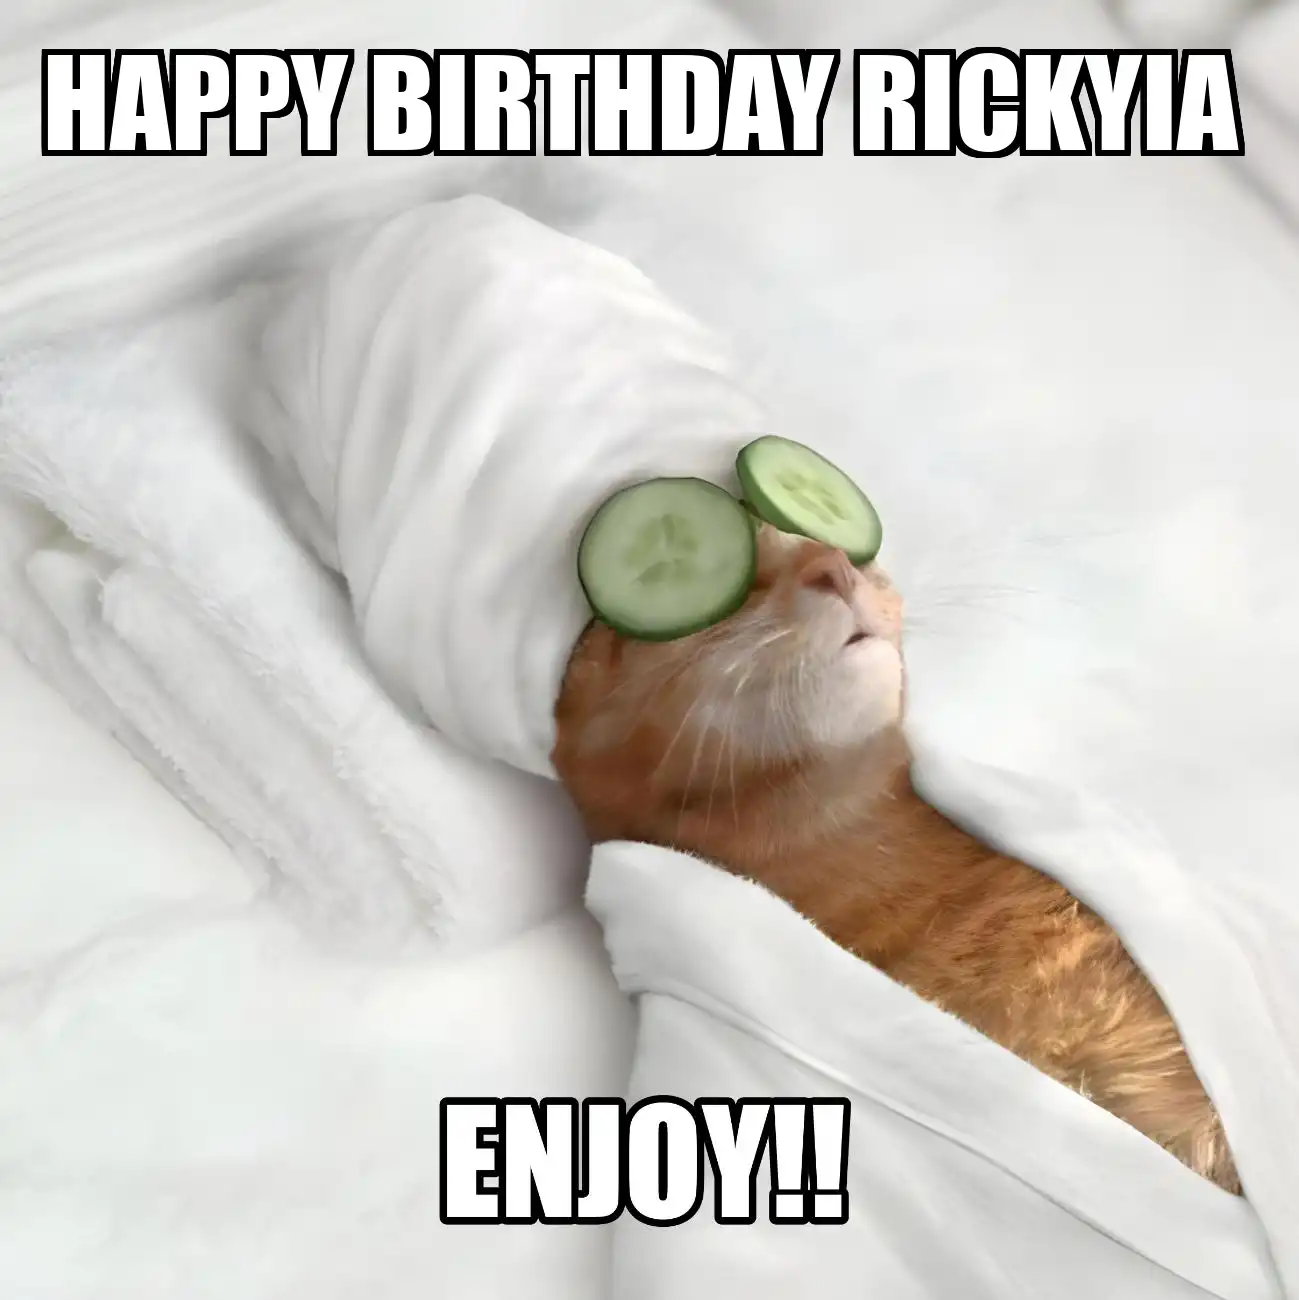 Happy Birthday Rickyia Enjoy Cat Meme